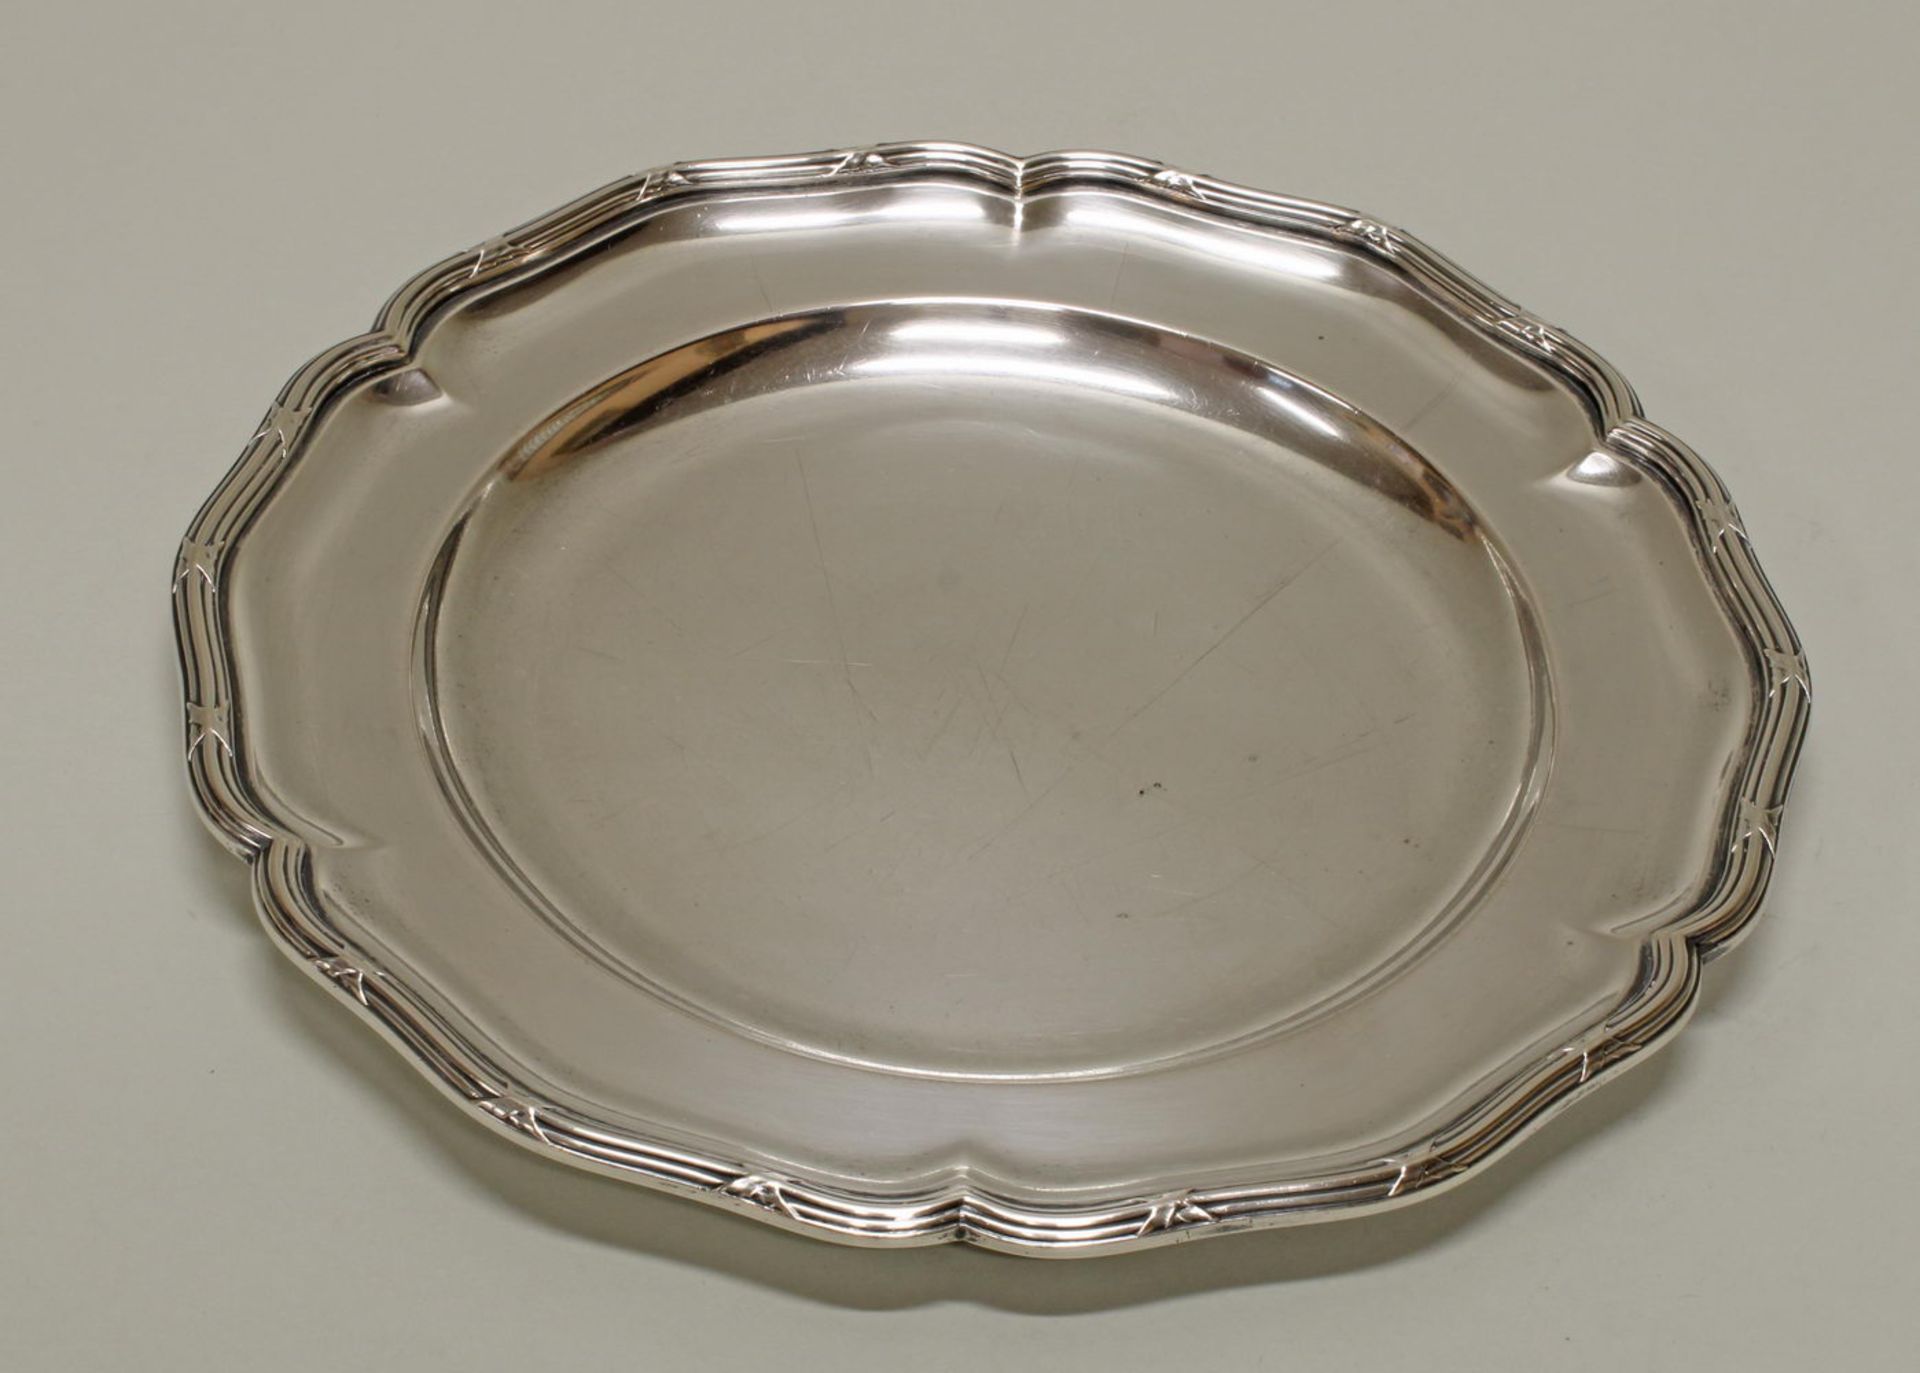 Teller, Silber 800, Wilkens, passig-geschweift, Kreuzband-Rand, ø 24.5 cm, ca. 522 g